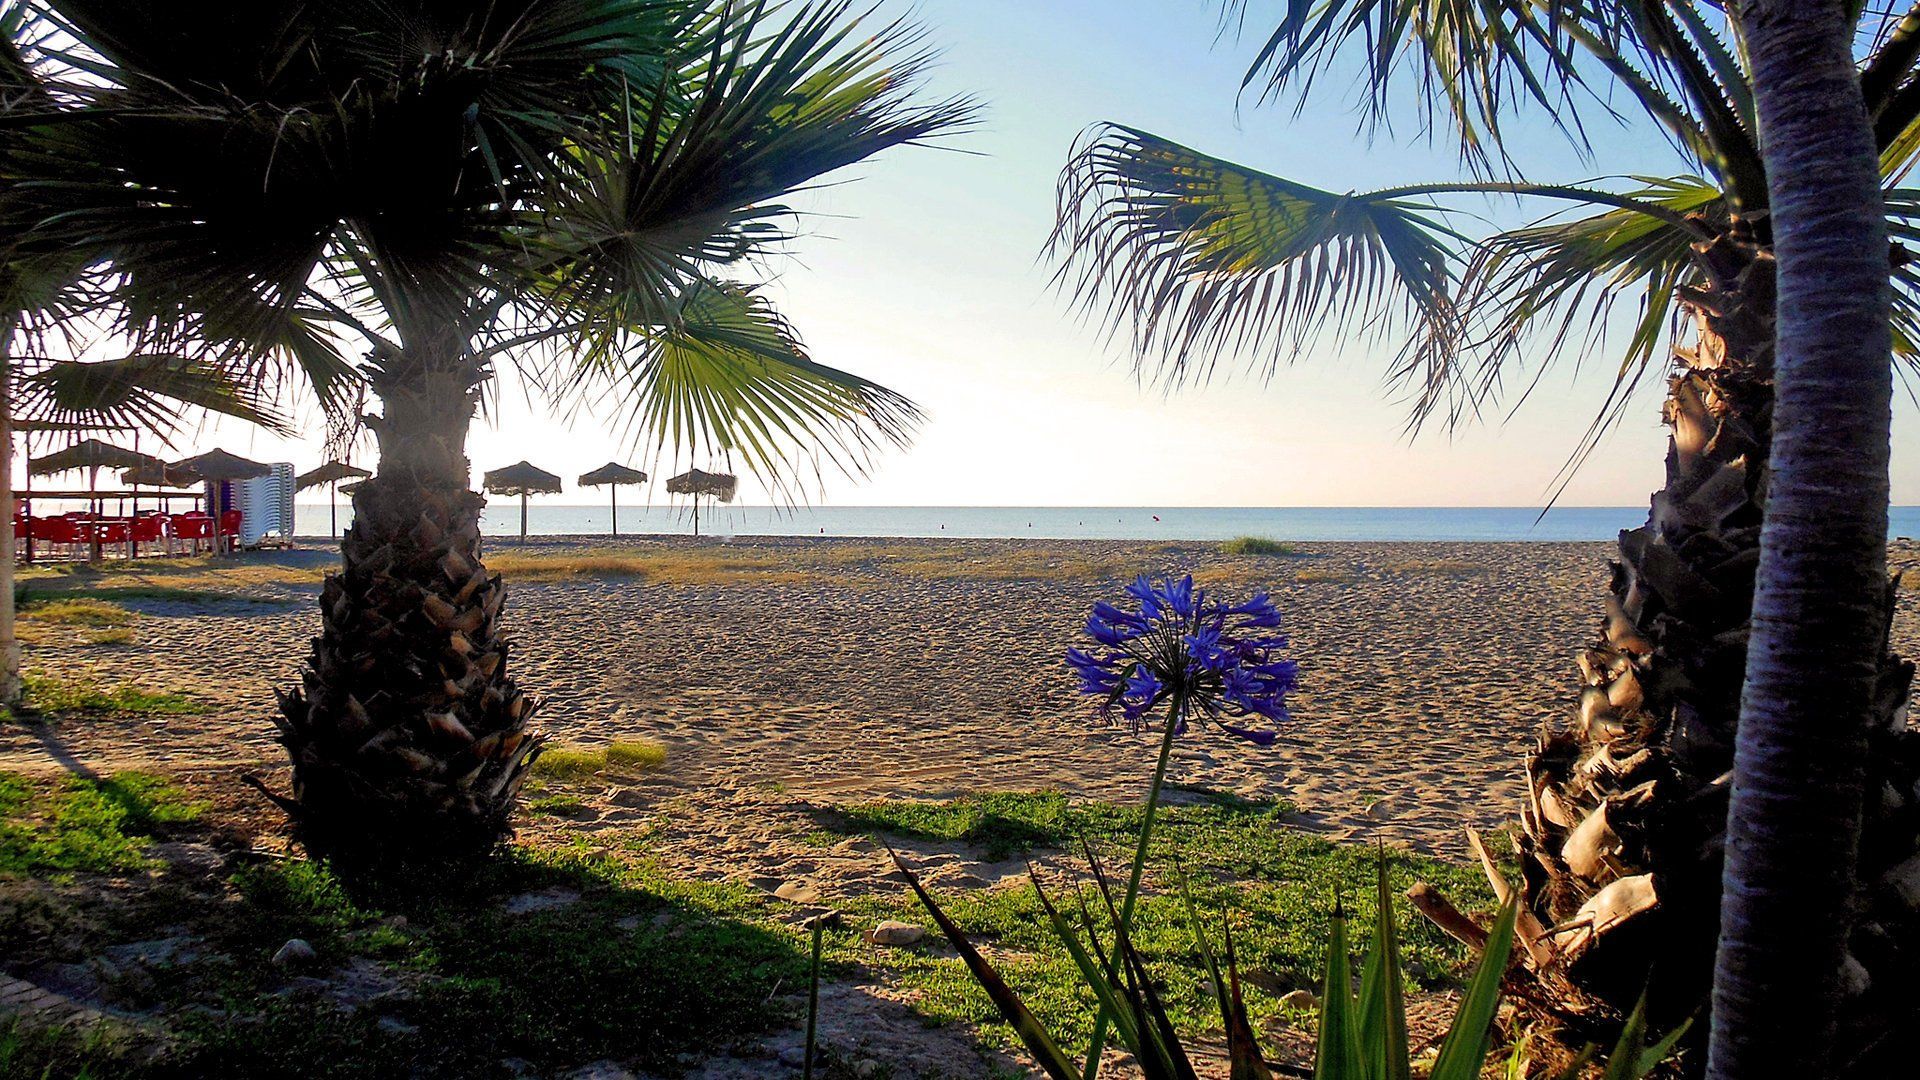 dos palmeras bajas enmarcan la imagen con una sola flor morada en el medio y la playa de arena más allá